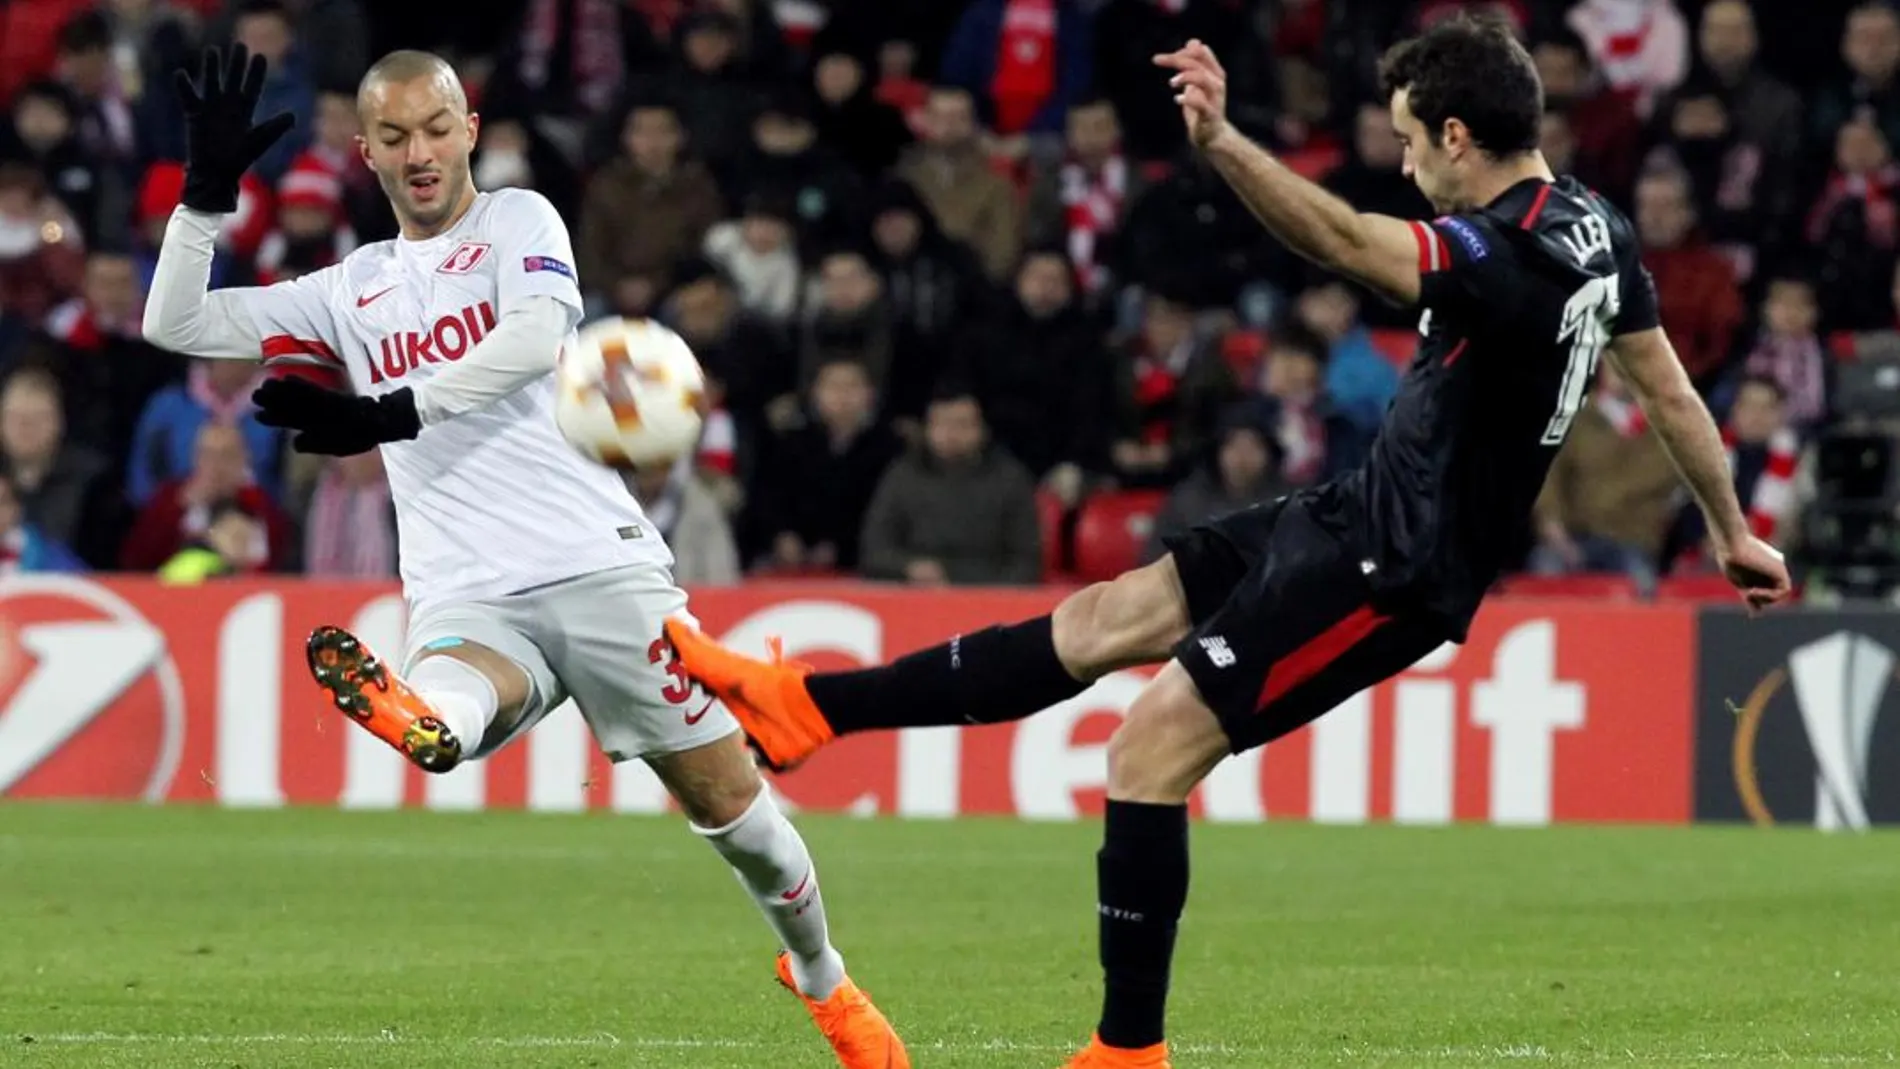 El defensa del Athletic Bilbao Iñigo Lekue, disputa un balón con el centrocampista argelino del Spartak de Moscú, Sofiane Hanni